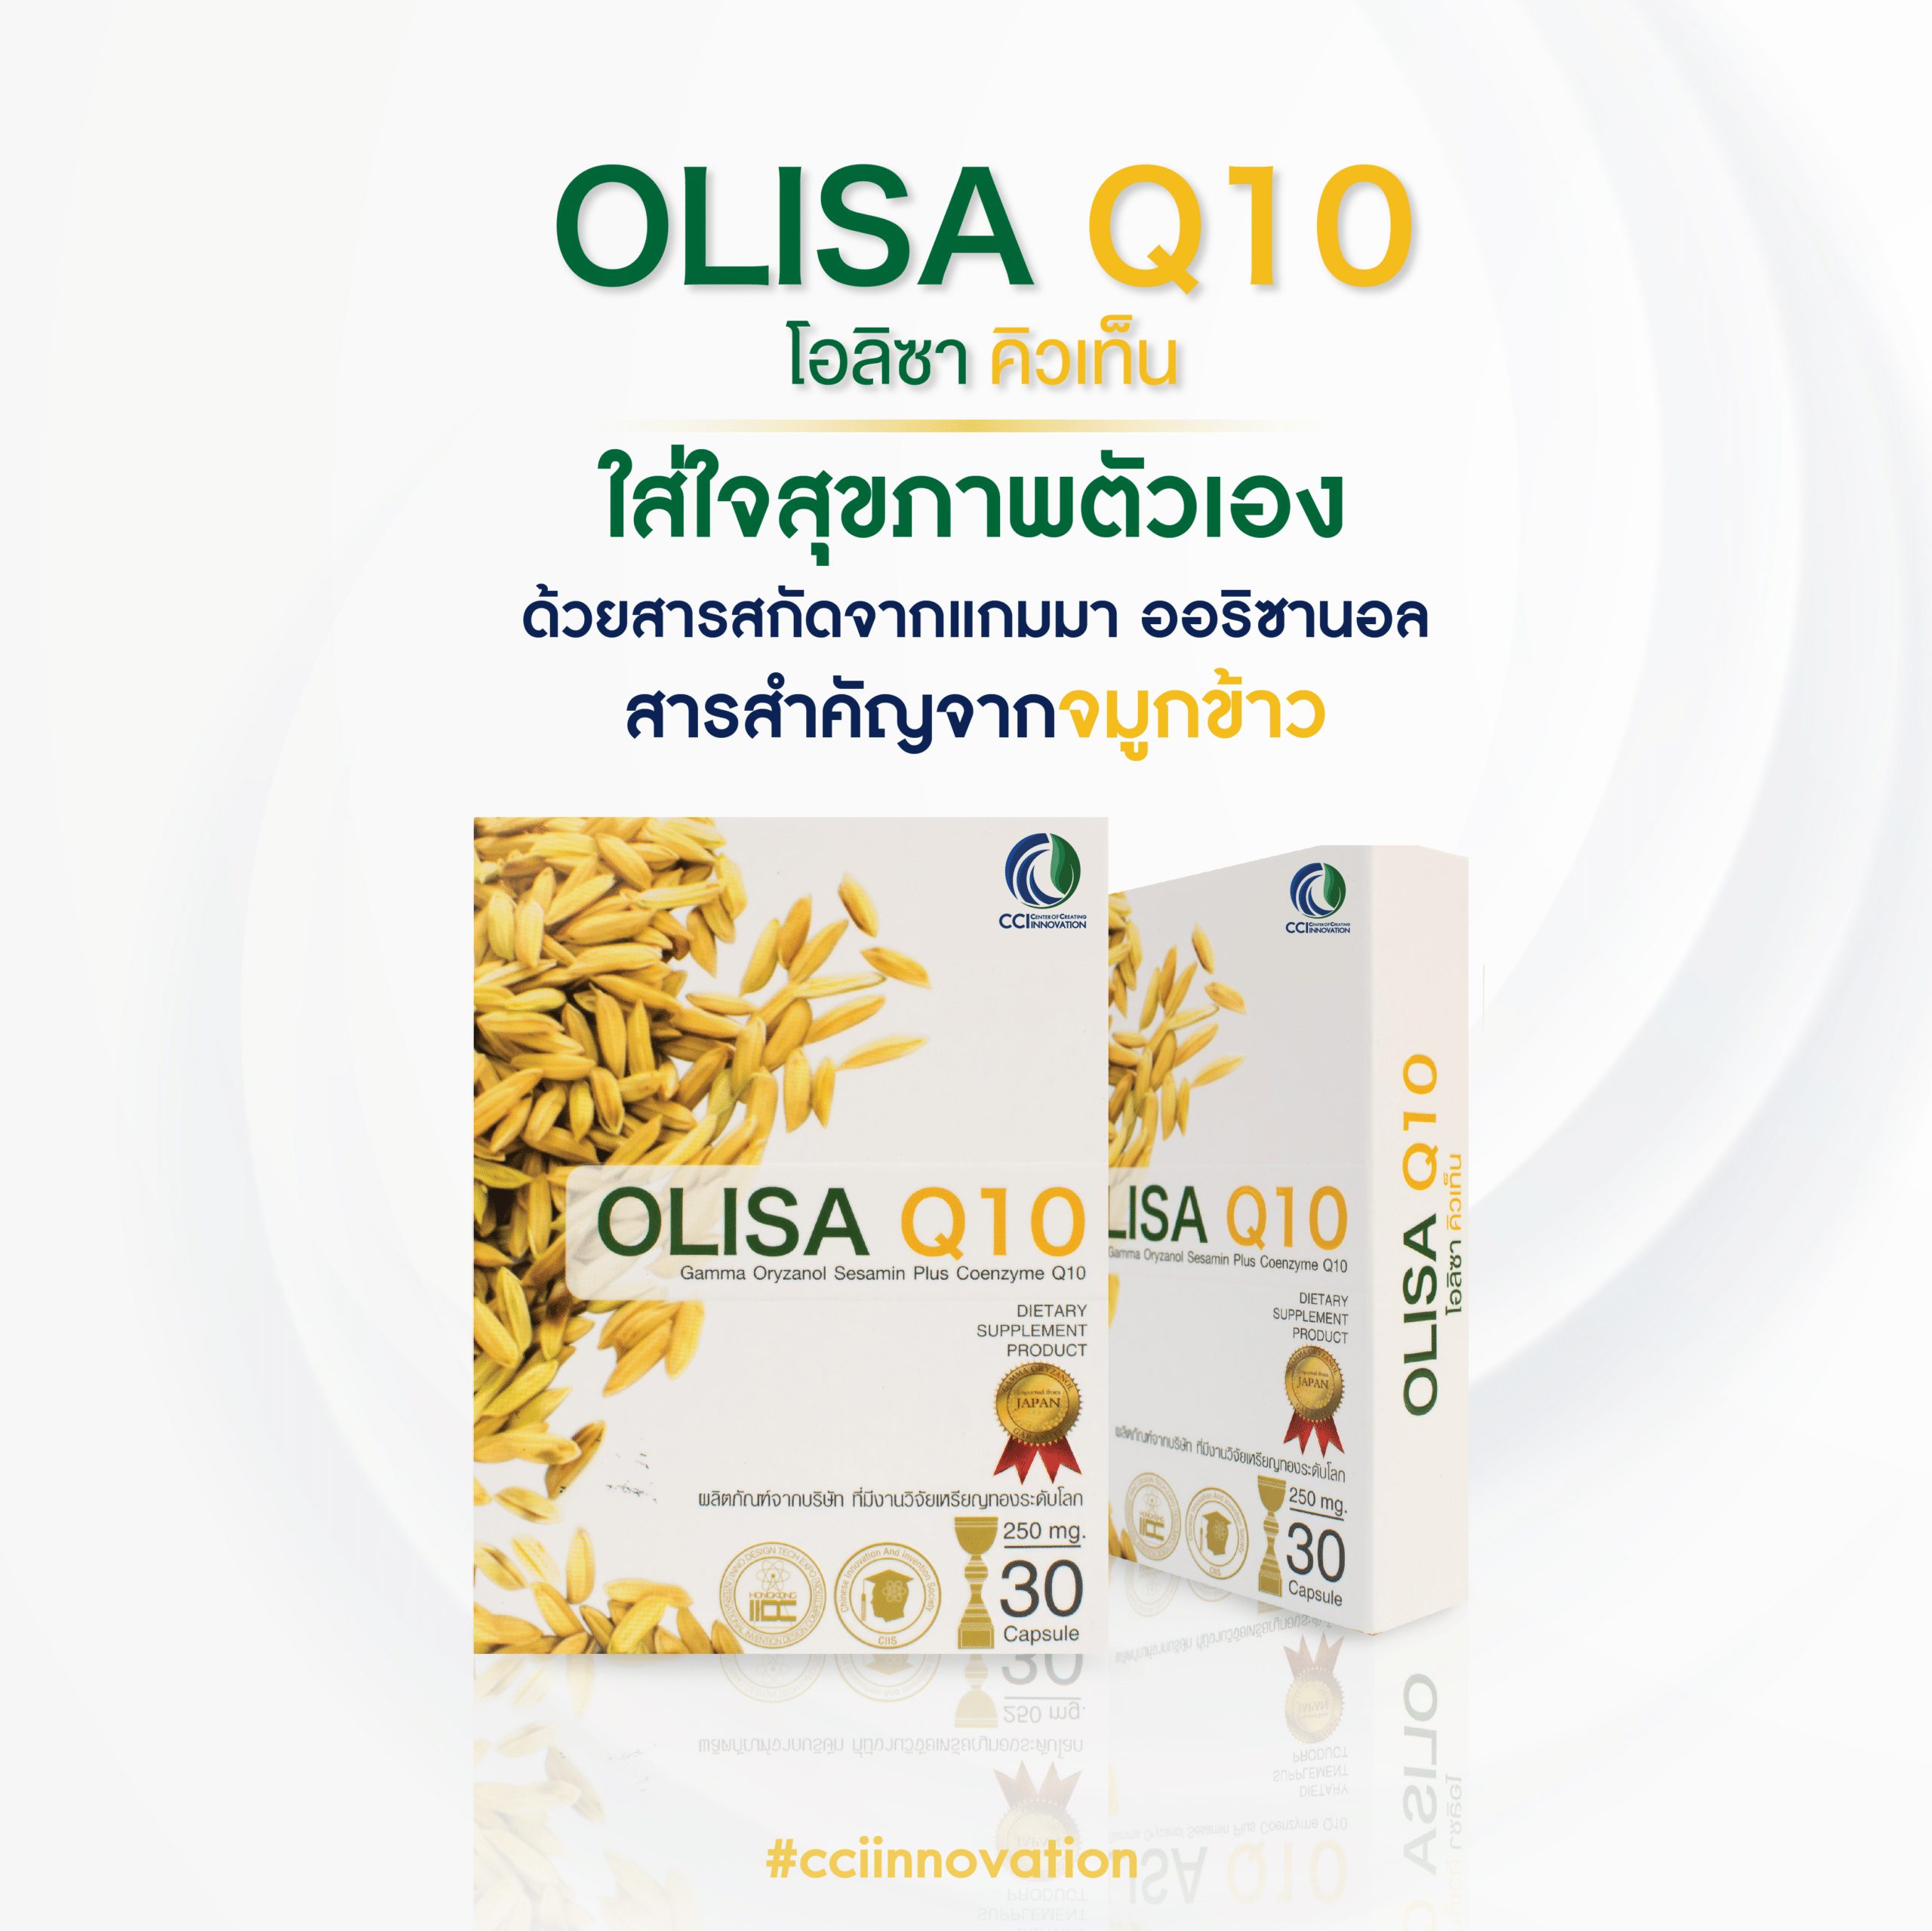 olisa q10 new 03 cci